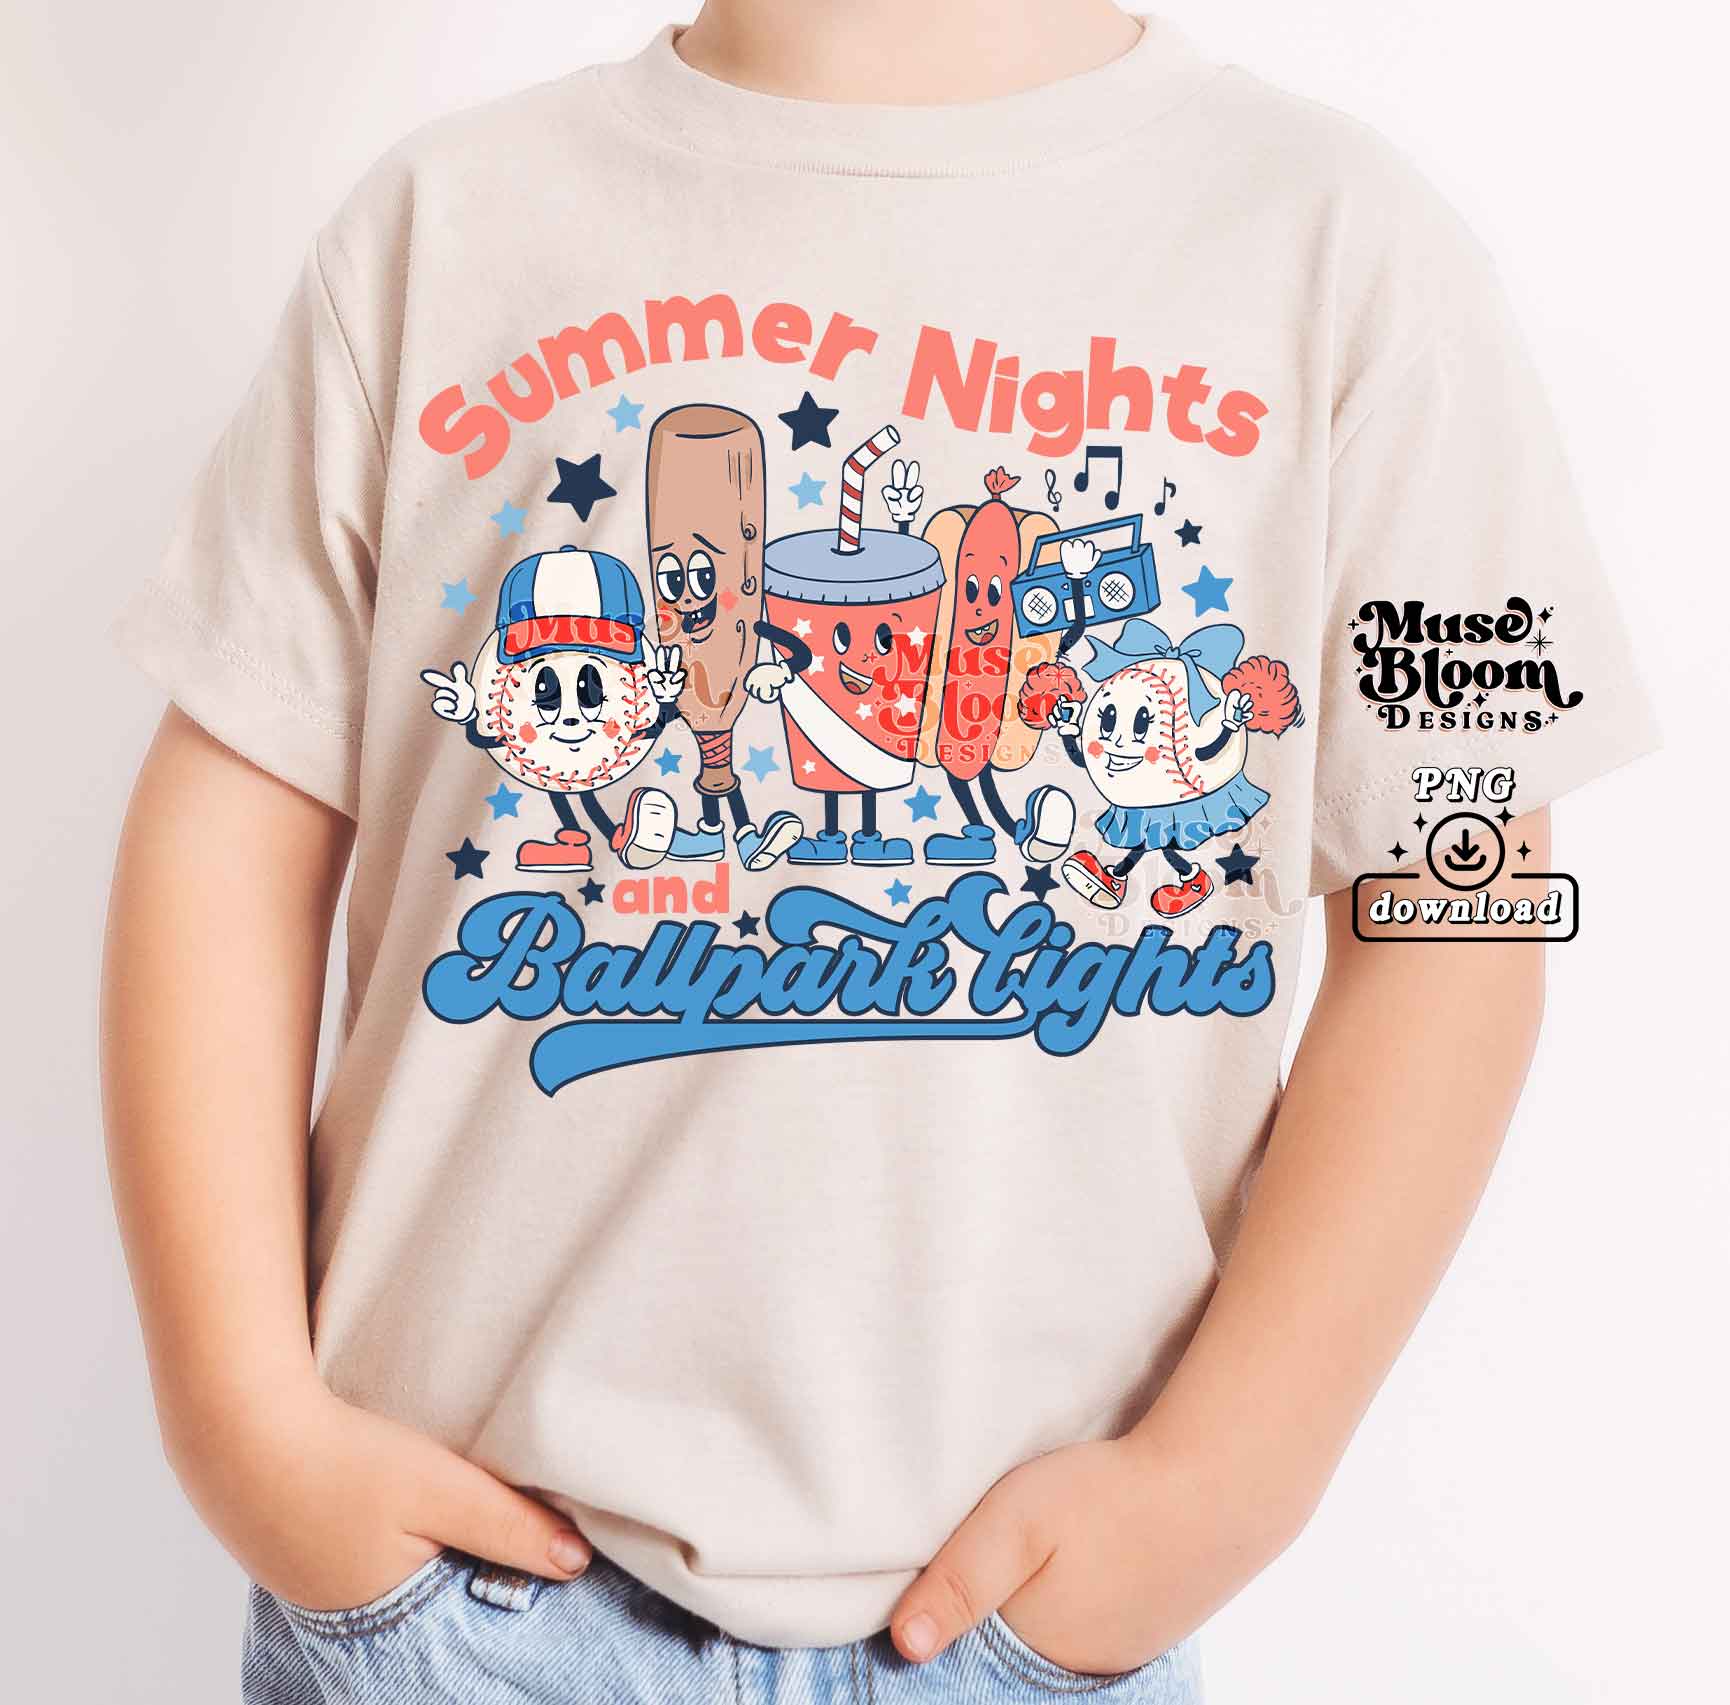 Summer nights ballpark lights png, Sublimation designs downloads